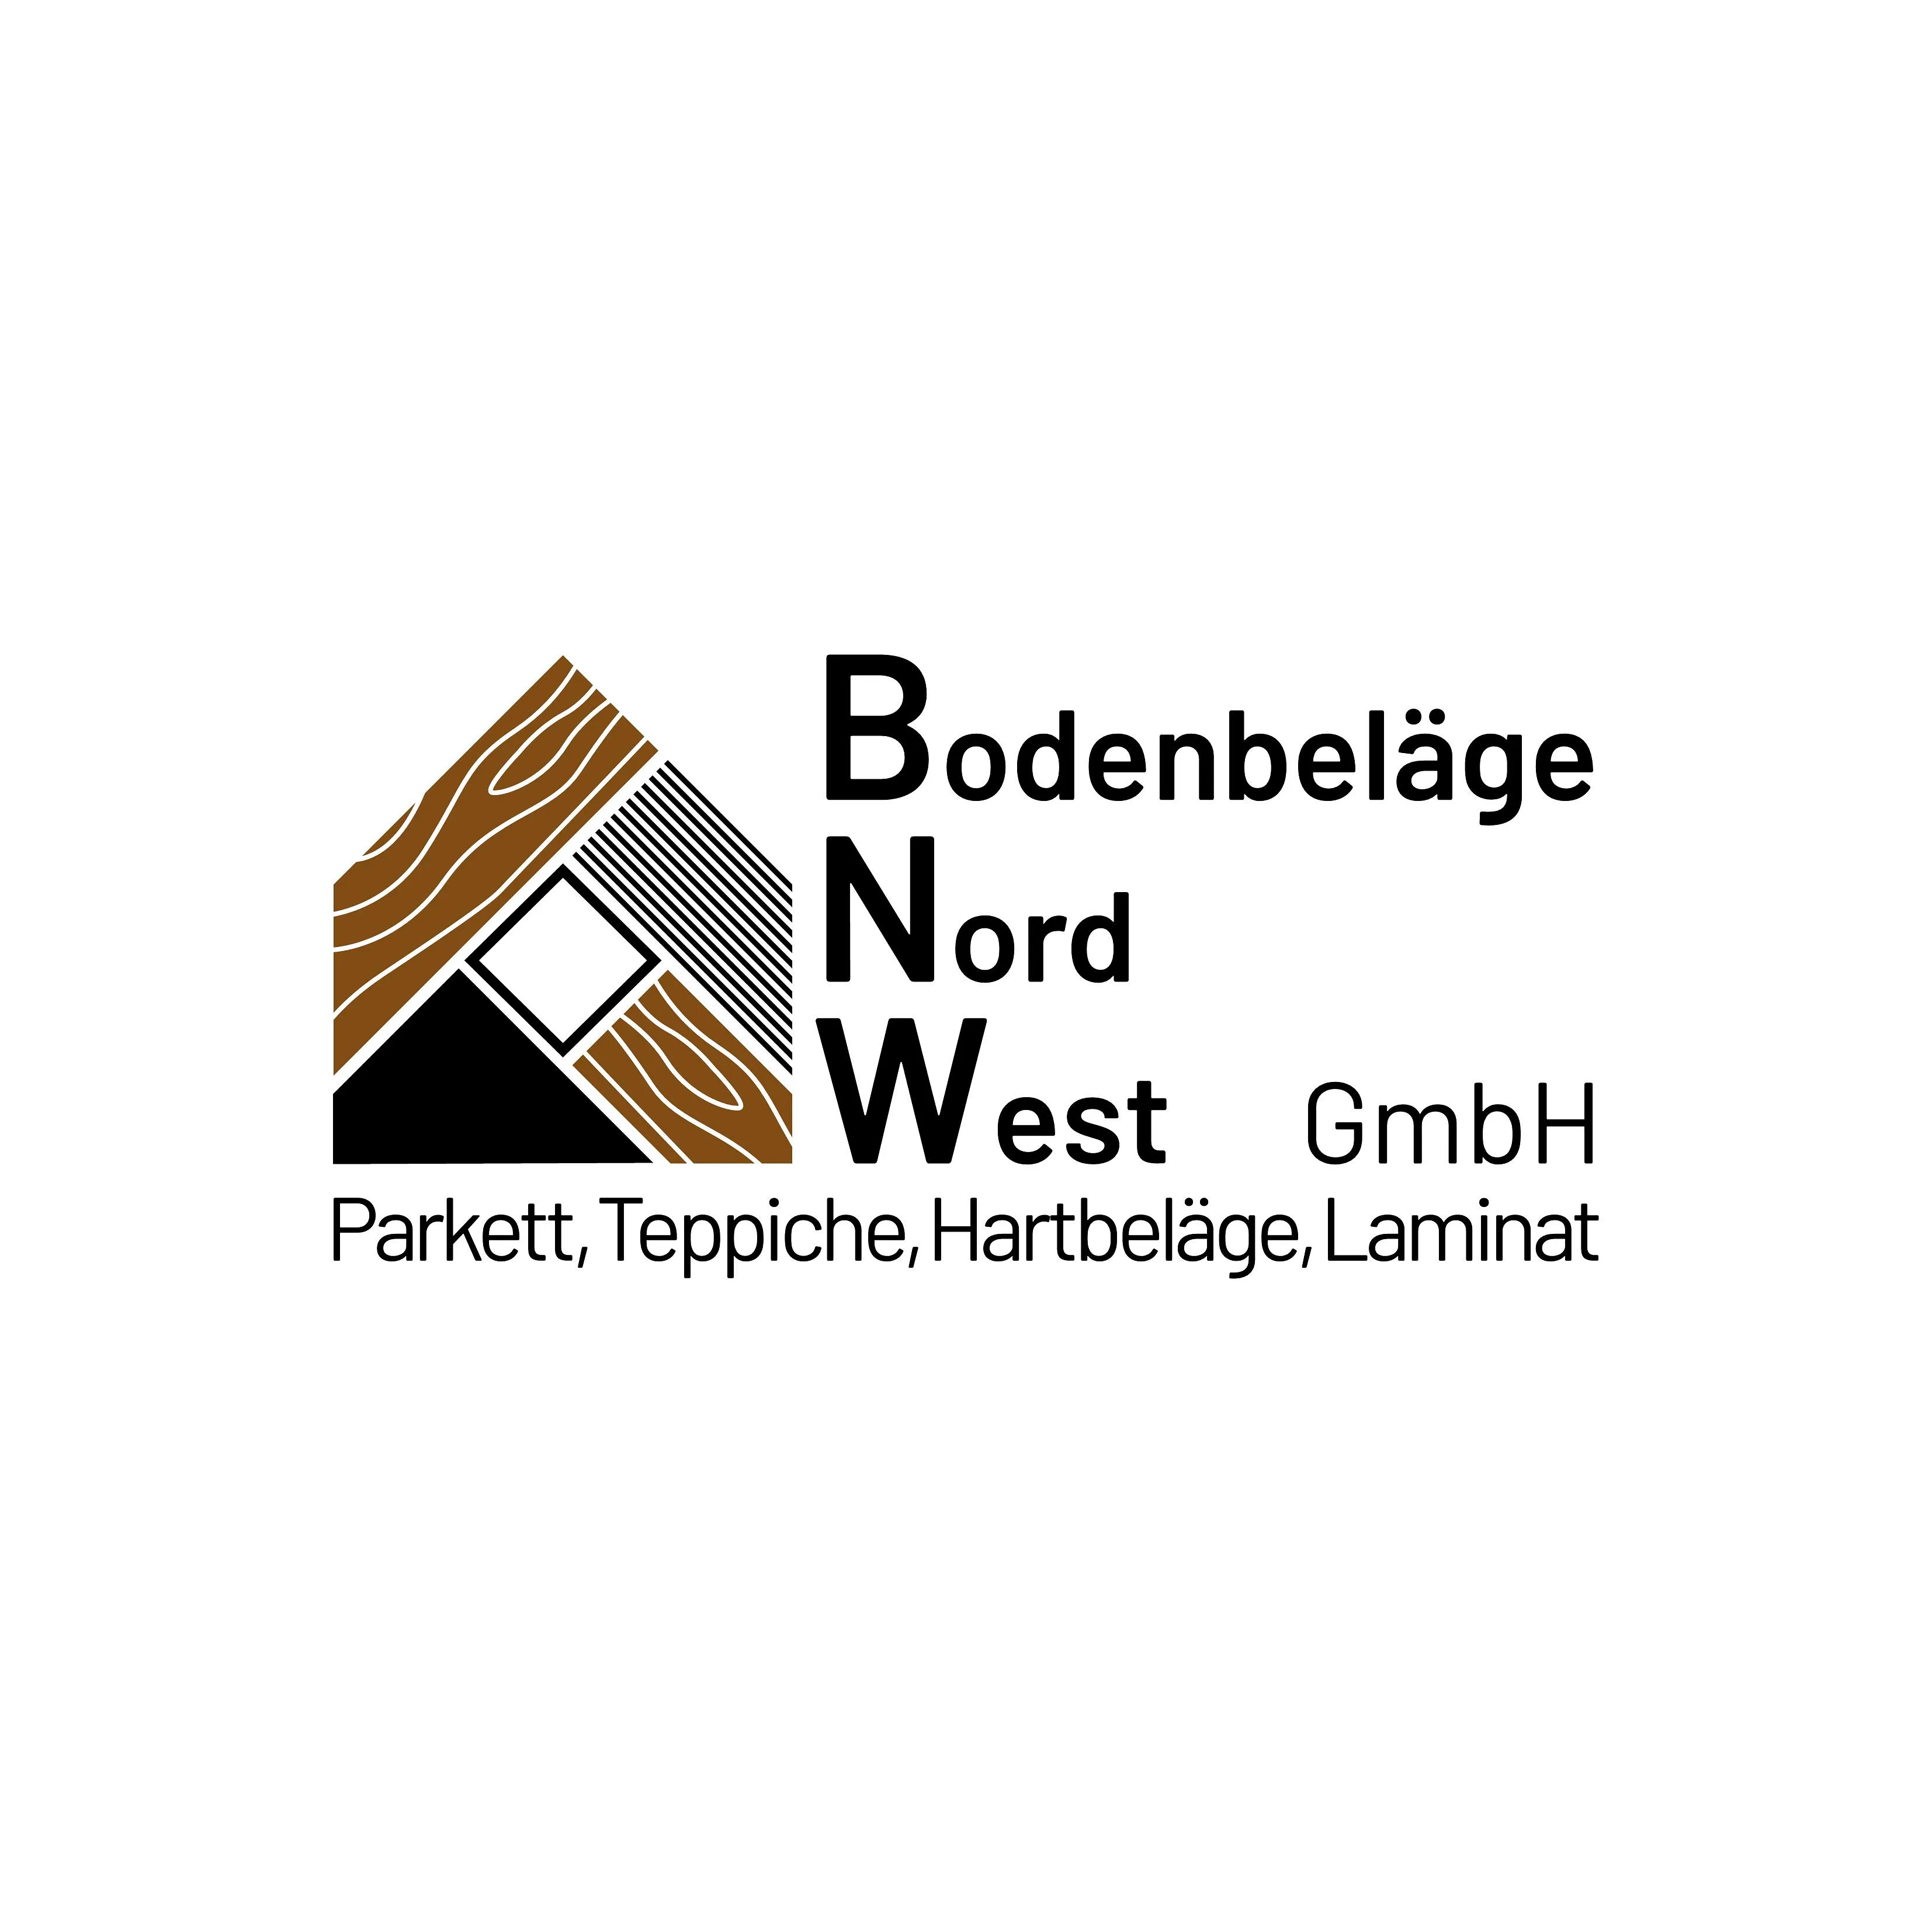 BNW Bodenbeläge GmbH